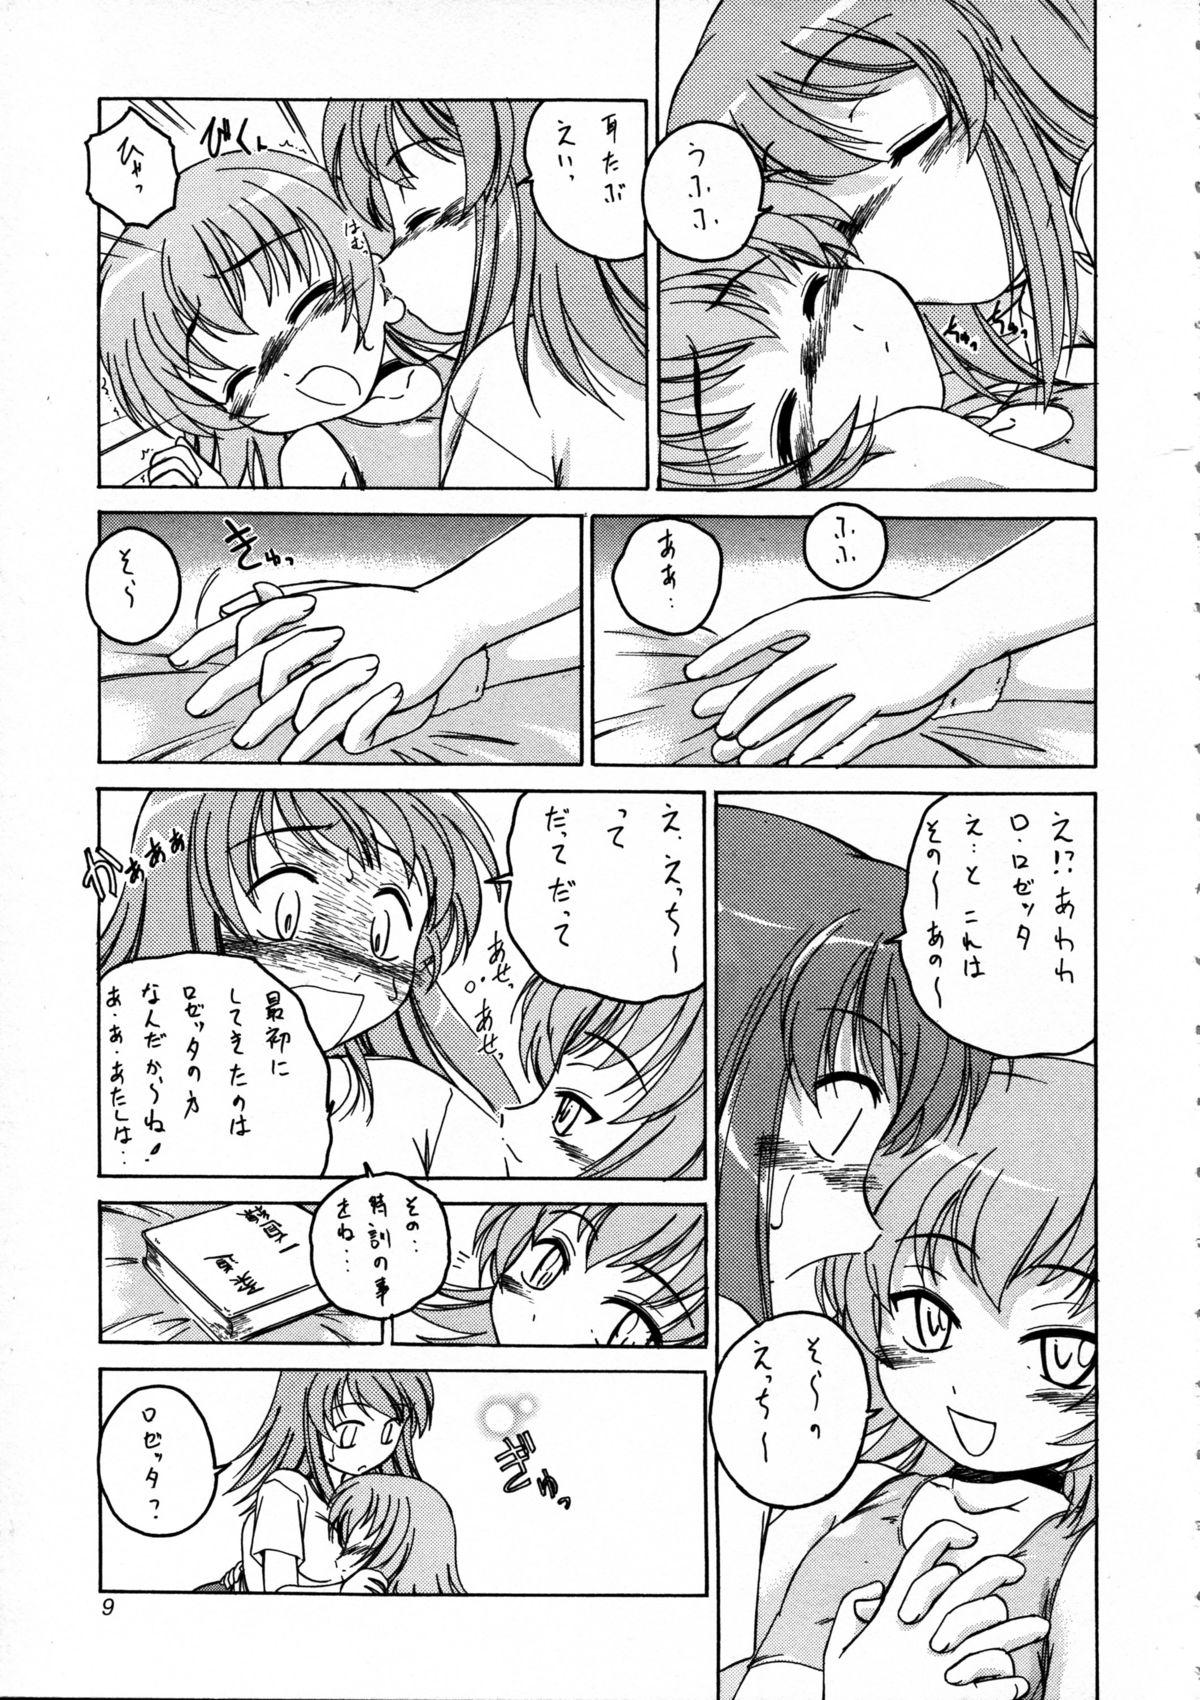 T Girl Manga Sangyou Haikibutsu 09 - Kaleido star Whooty - Page 9